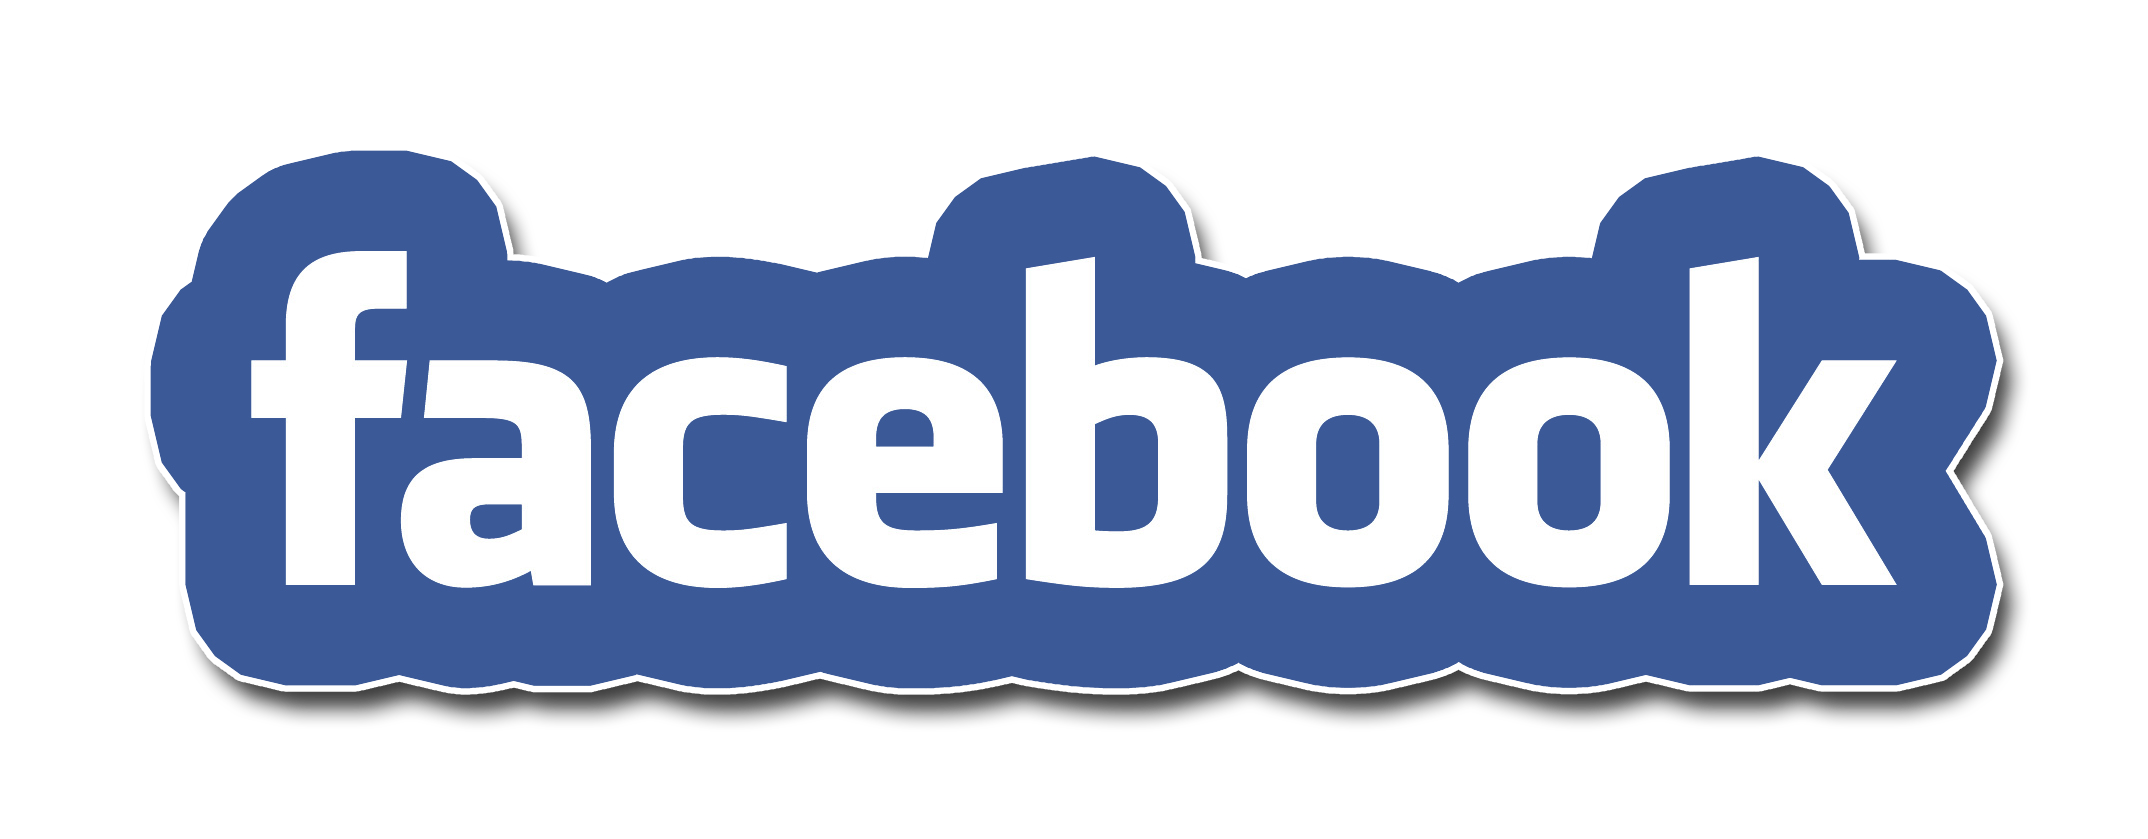 facebook-text-transparent-logo-23.png